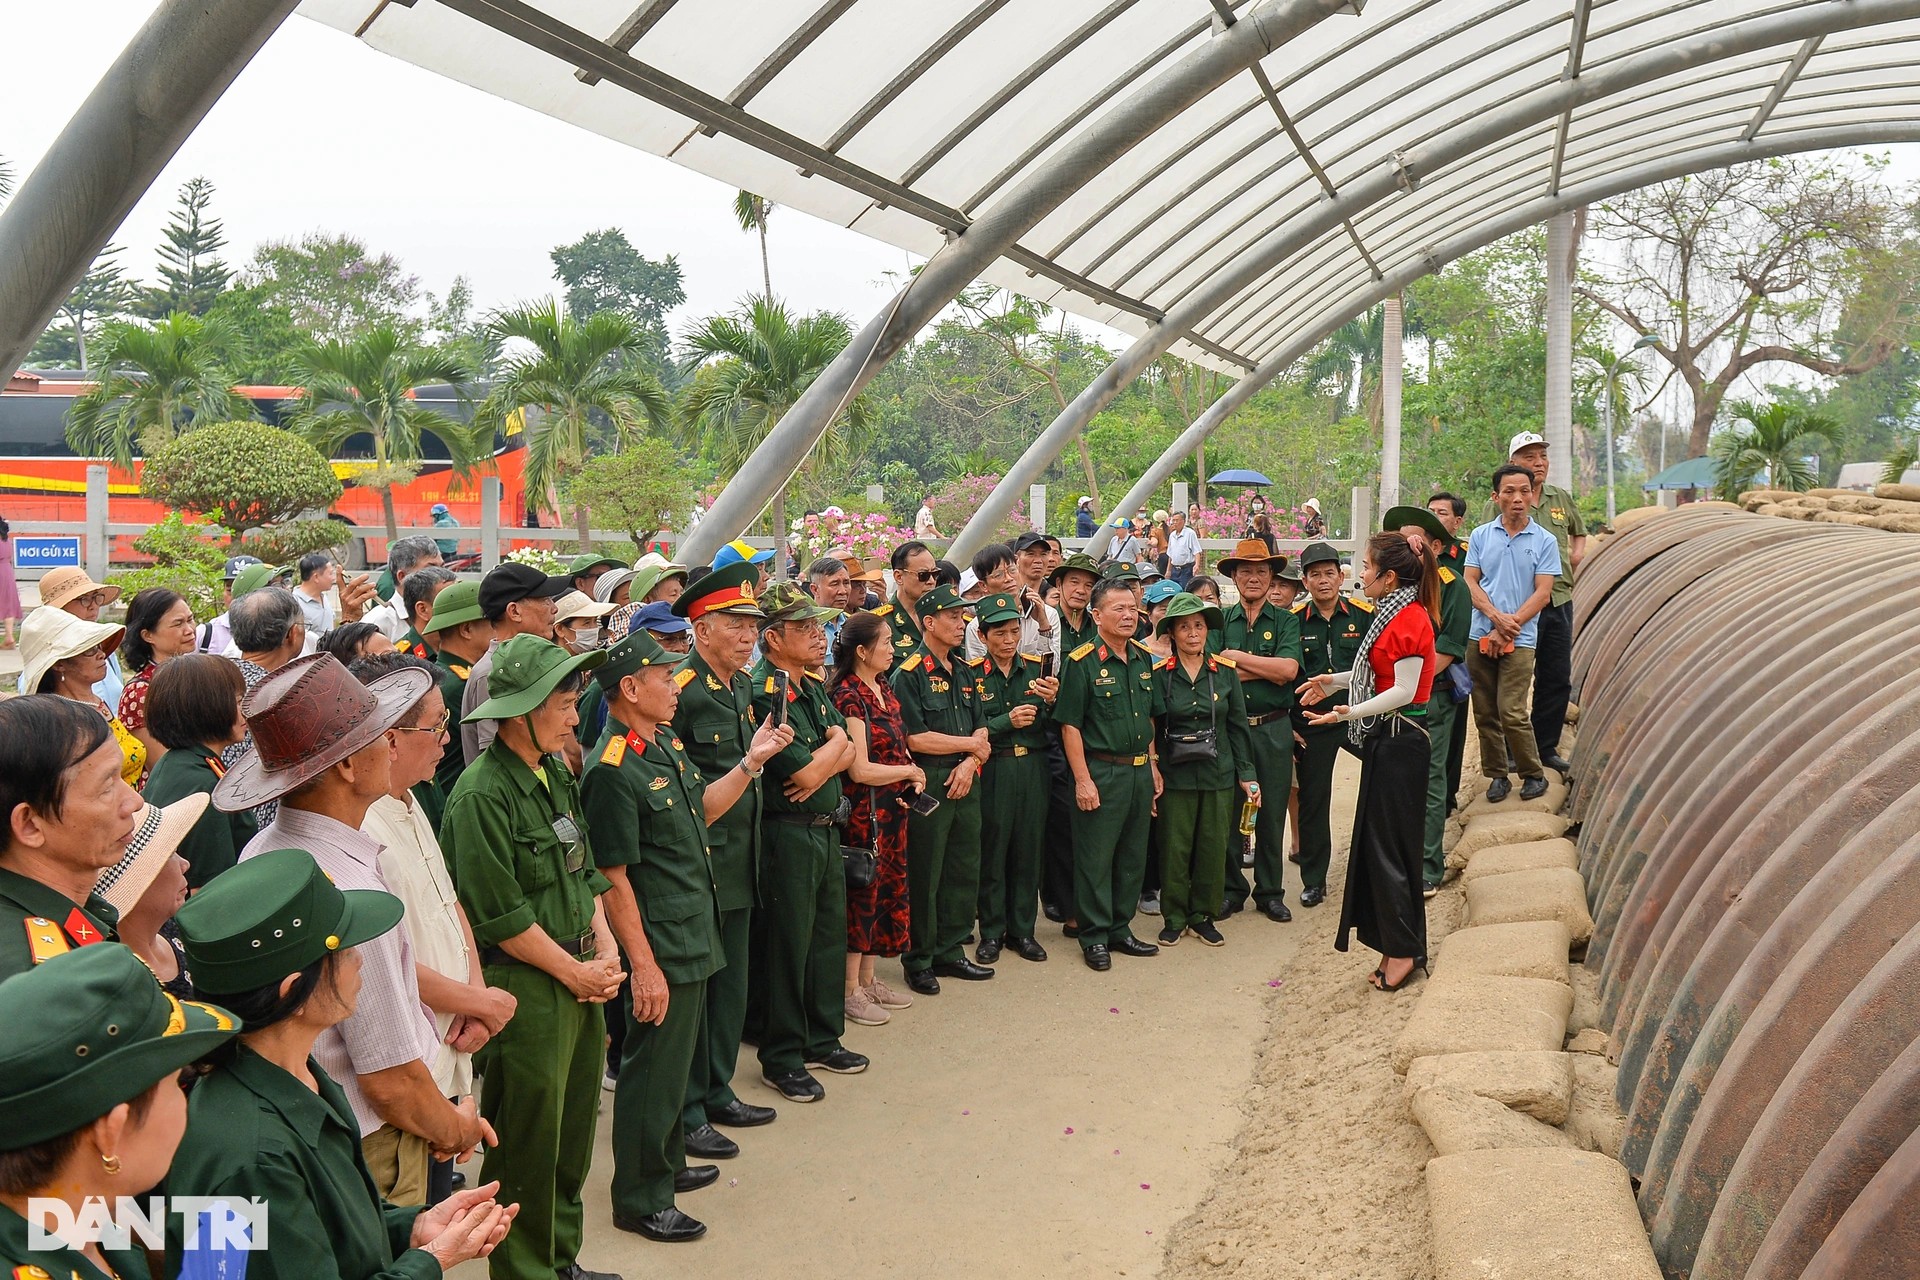 Du khách tham quan tại các điểm thuộc quần thể di tích Chiến trường Điện Biên Phủ tại thành phố Điện Biên Phủ, tỉnh Điện Biên. (Ảnh: Dân trí)